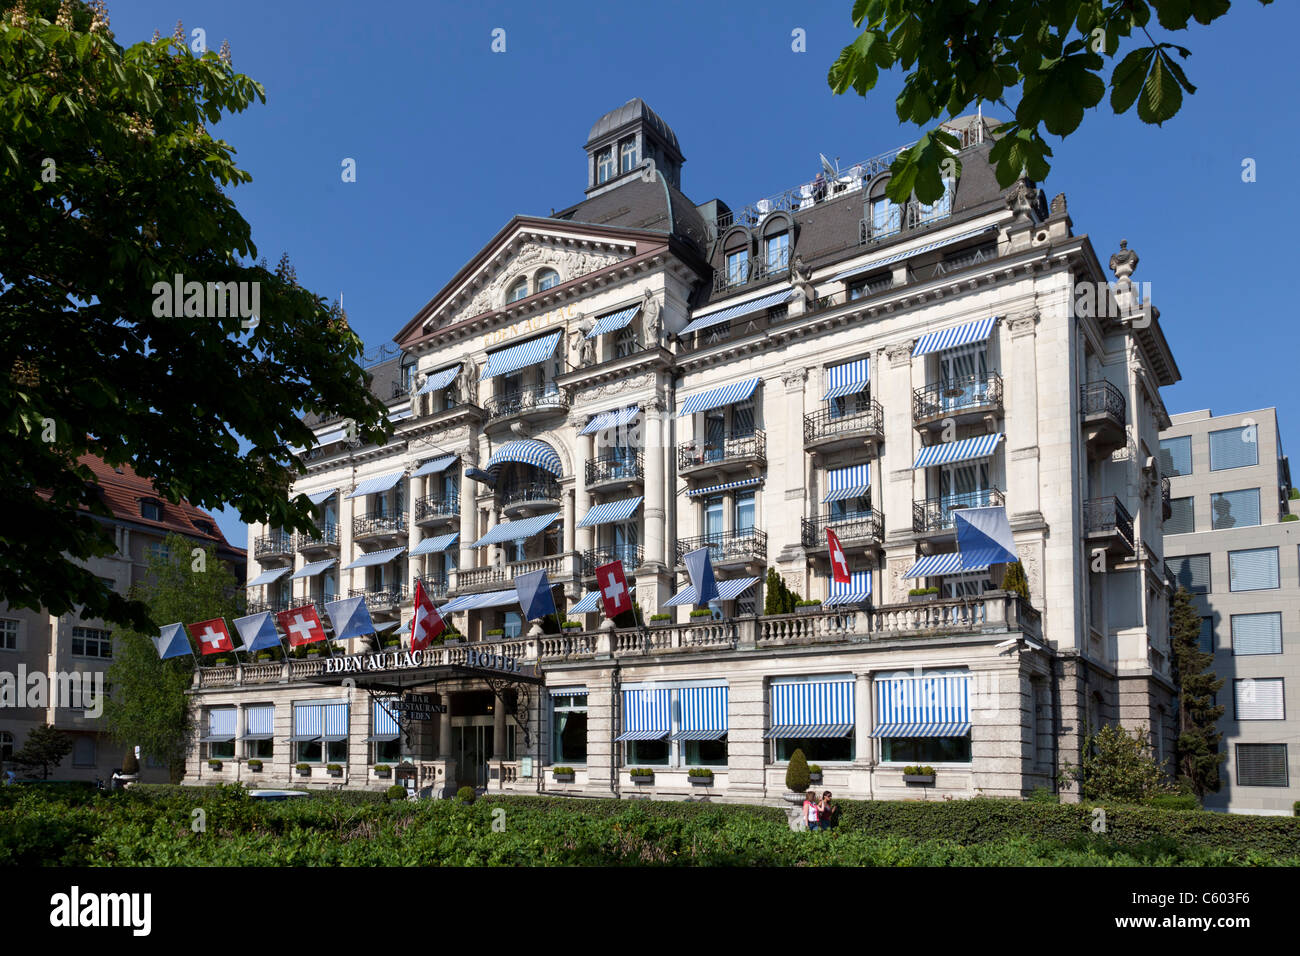 Switzerland Zurich, Hotel Eden au Lac, near Zurich lake promande Stock Photo